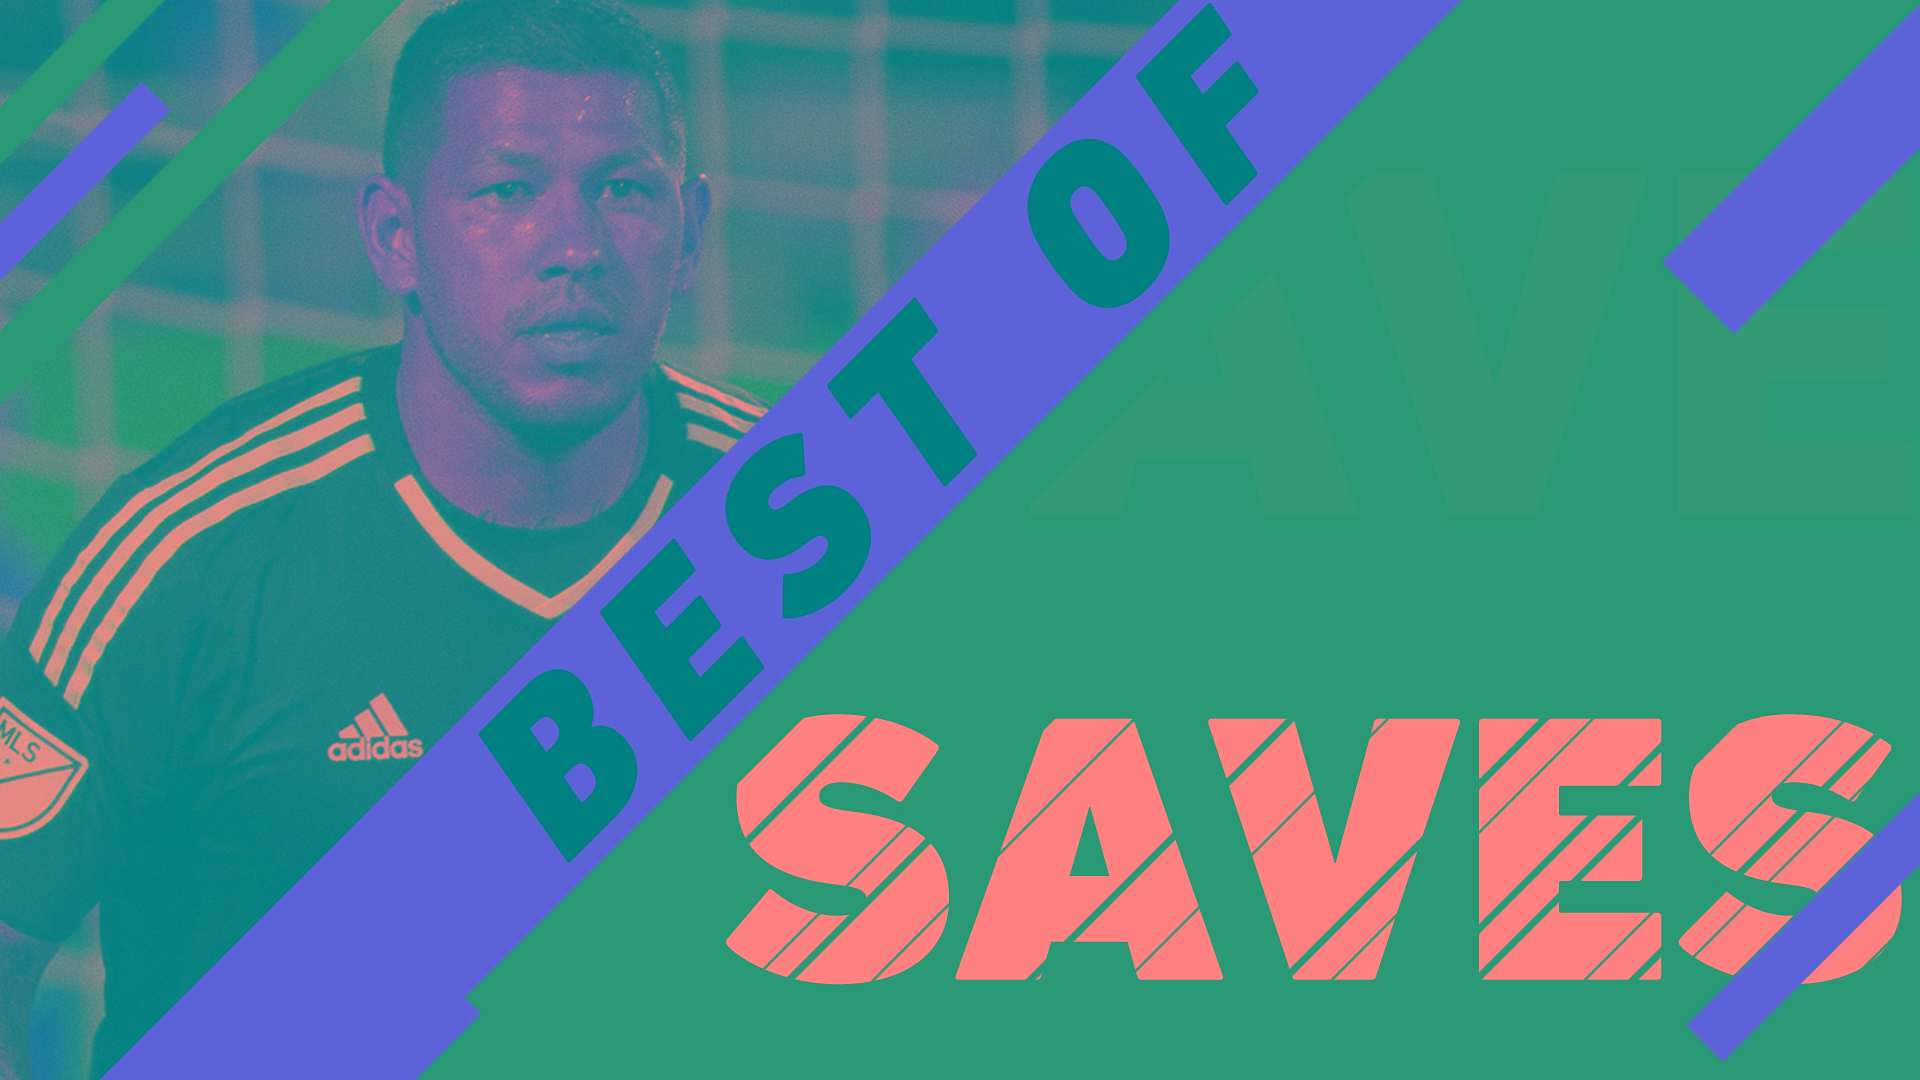 Video via MLS: Best saves in MLS history